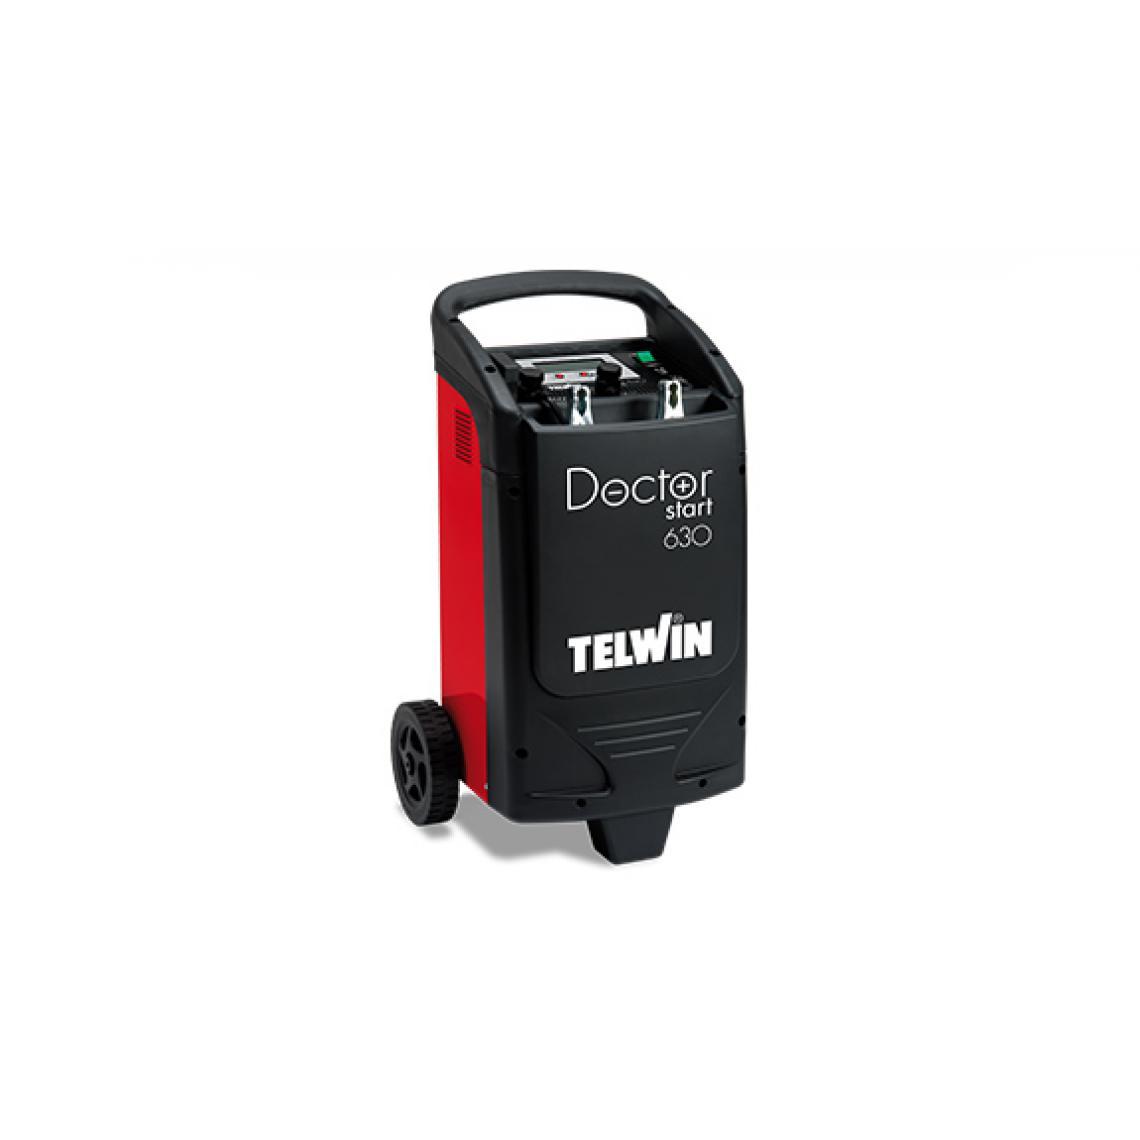 Telwin - Telwin - Chargeur de batterie multifonction 12 / 24 V puissance de charge 2 kW - DOCTOR START 630 - Consommables pour outillage motorisé